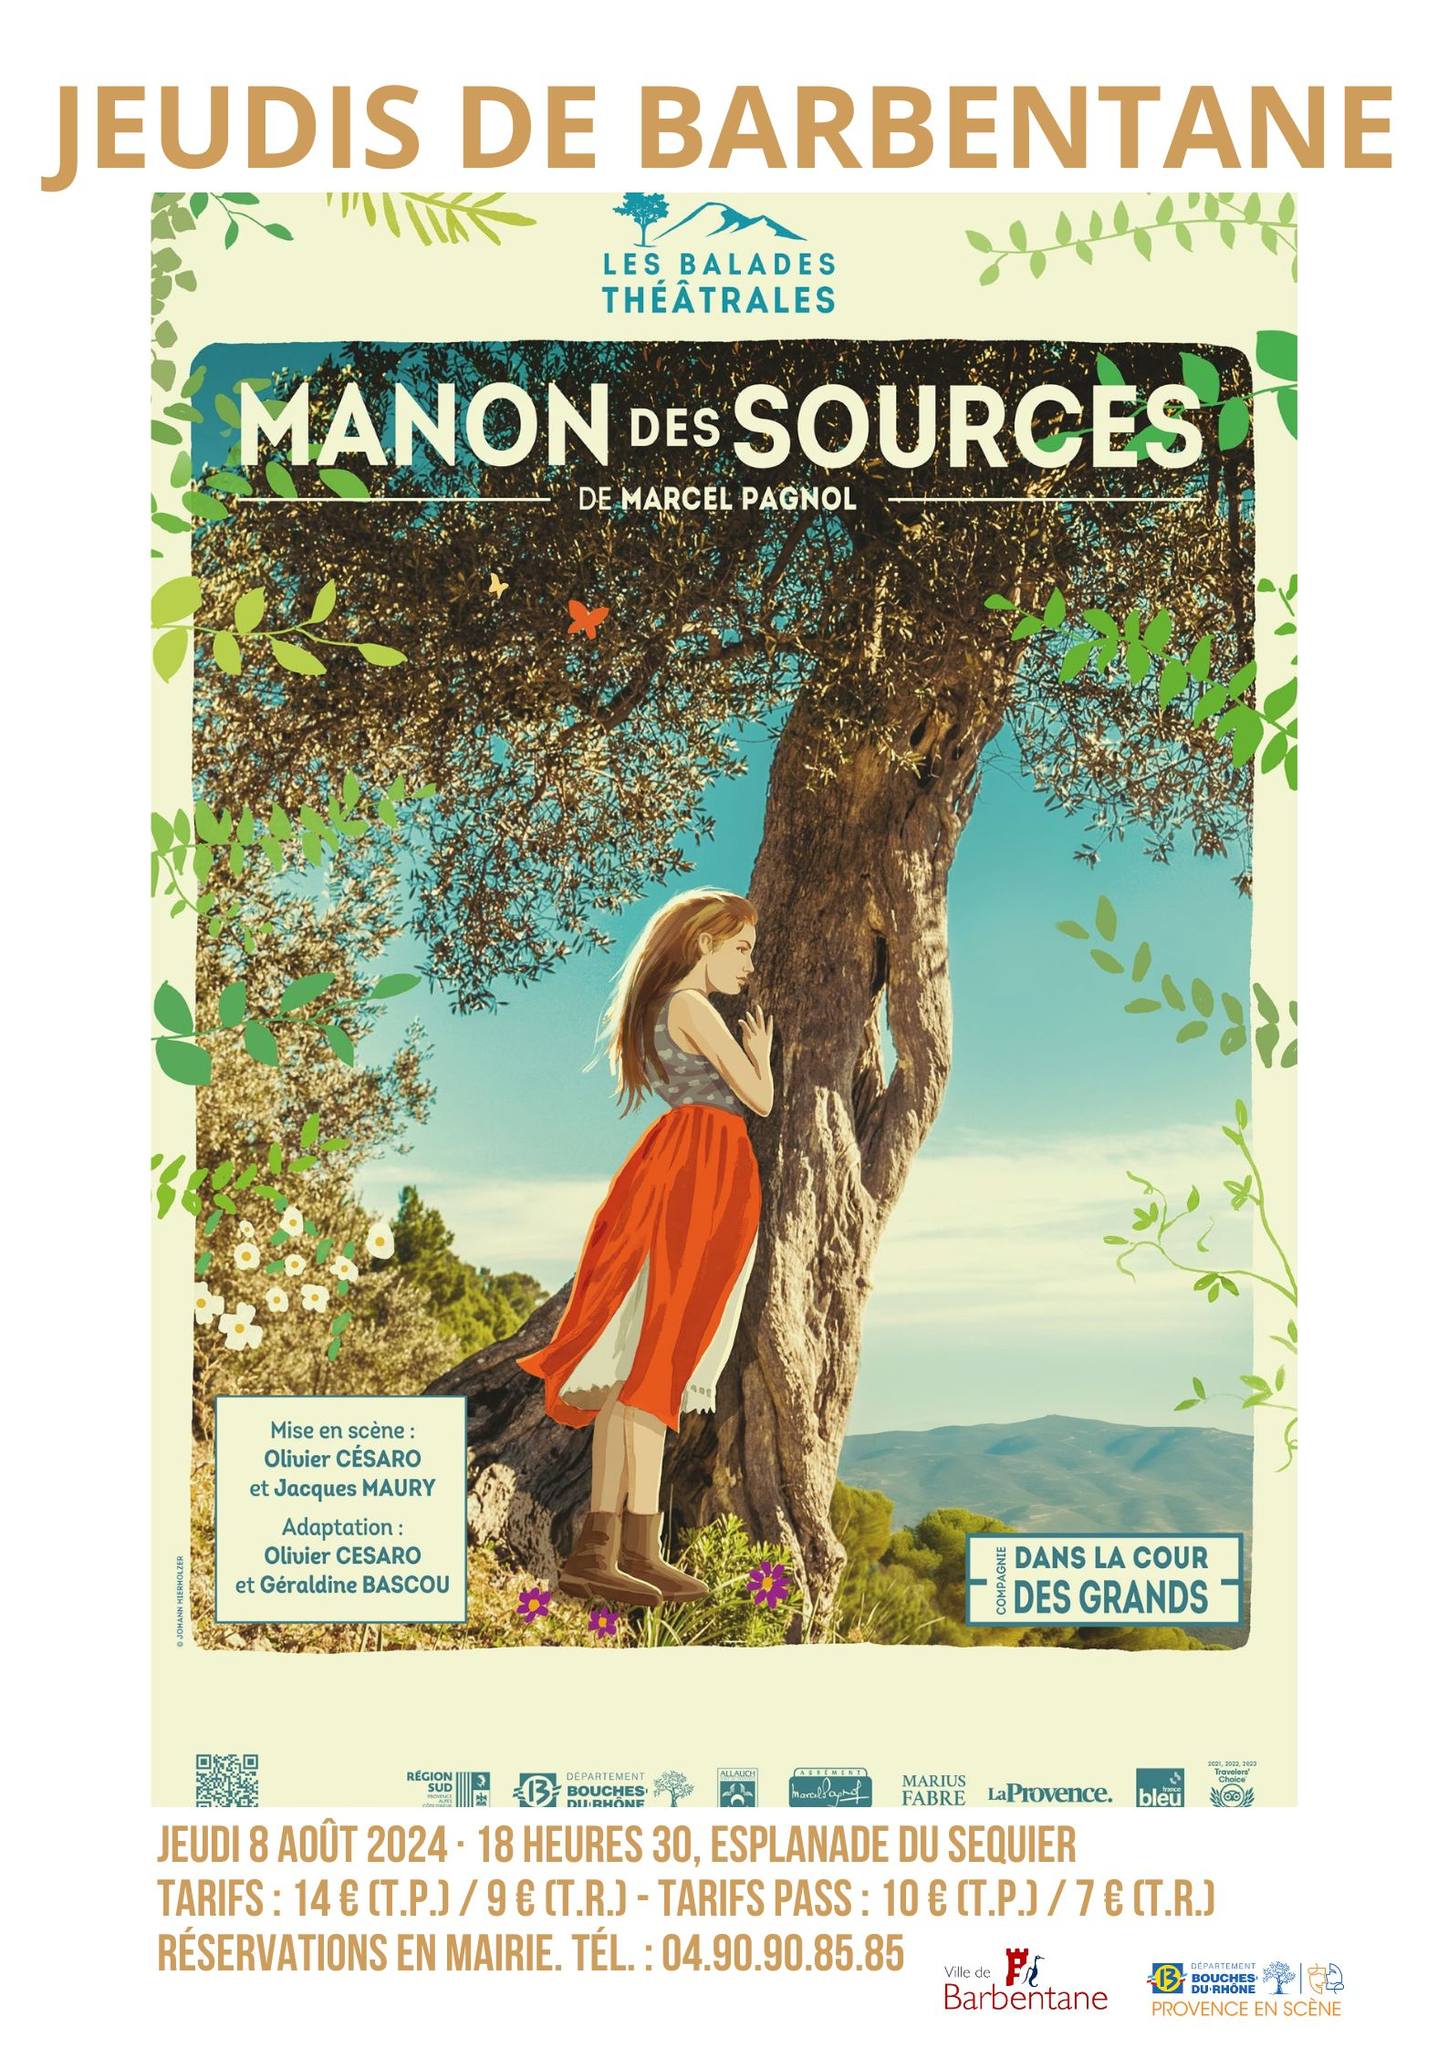 Les Jeudis de Barbentane - Manon des sources